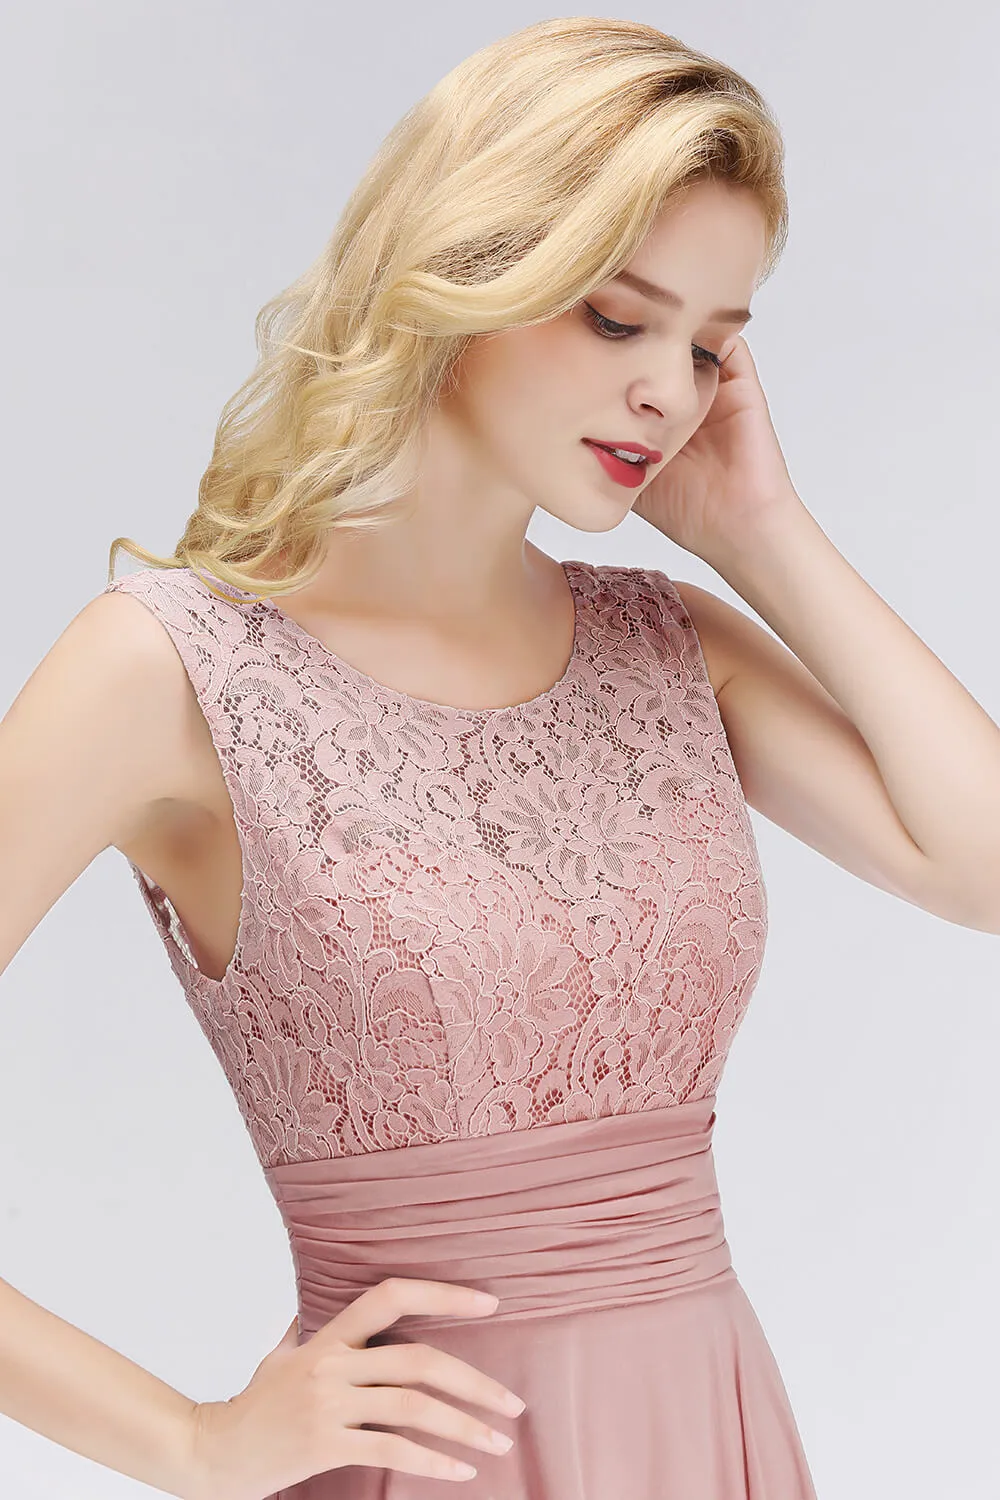 먼지가 많은 장미 핑크 레이스 긴 이브닝 드레스 시폰 로브 드 Soirée de Mariage 이벤트 드레스 Vestidos de Fiesta CPS1068